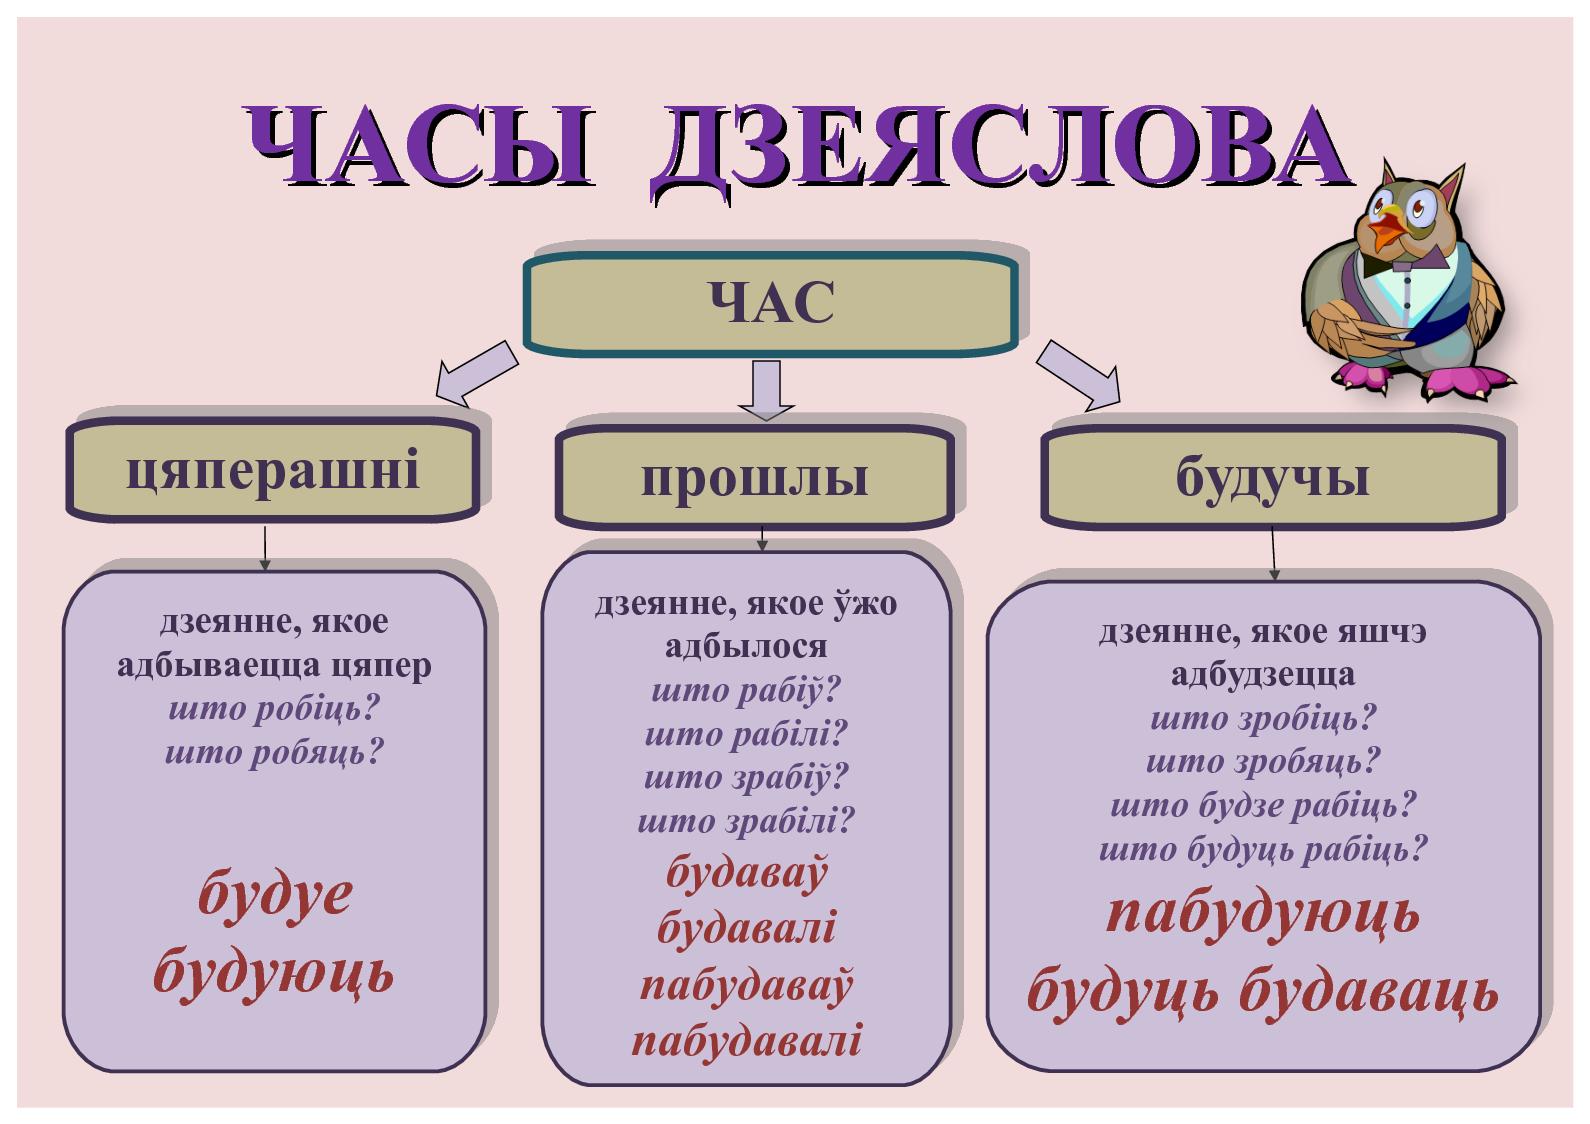 члены сказа в белорусском языке фото 37